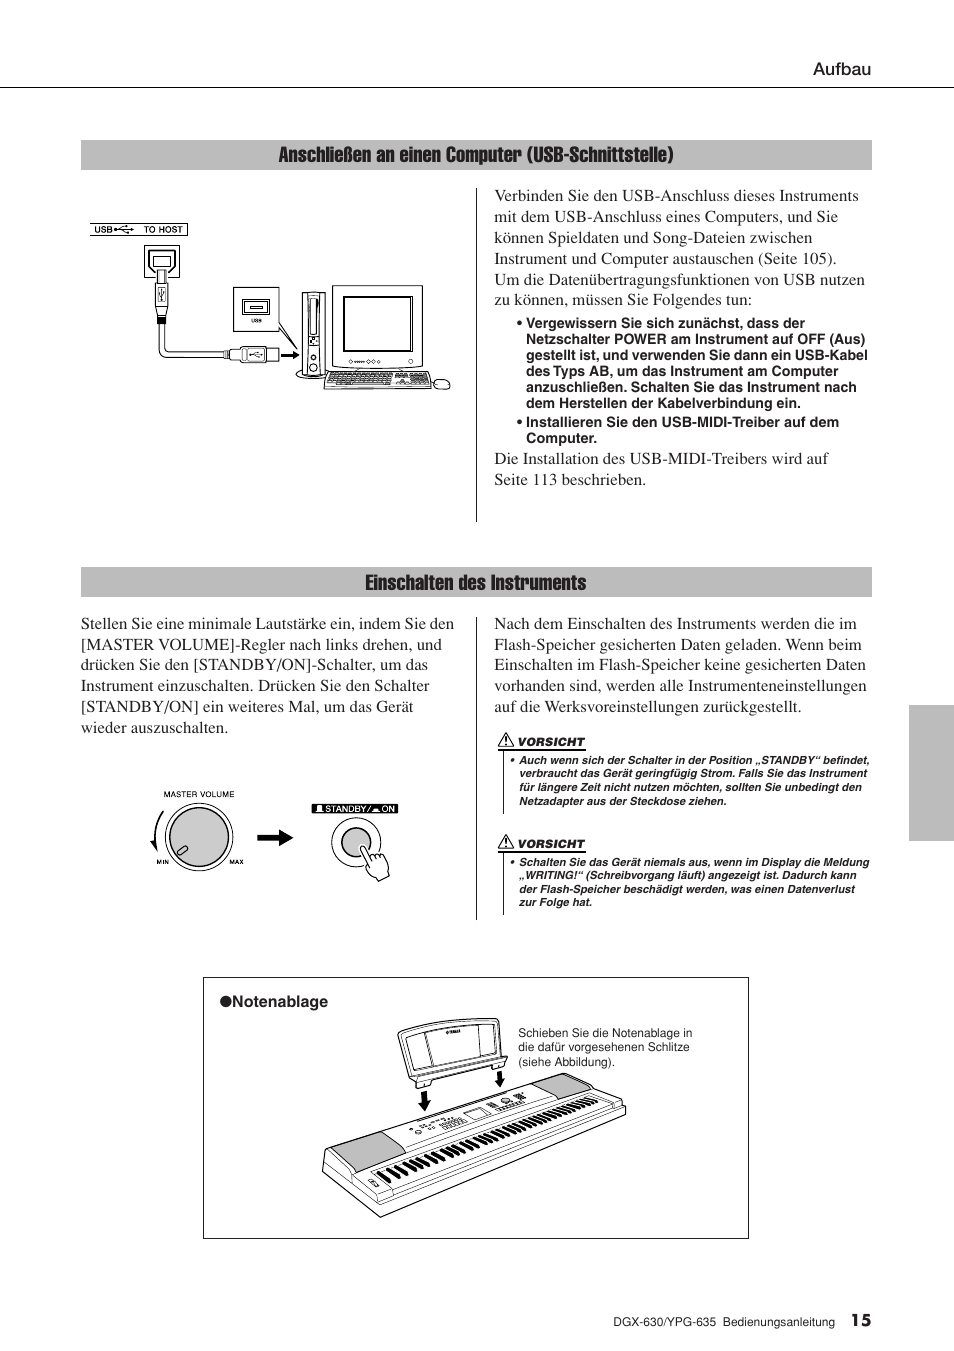 Anschließen an einen computer (usb-schnittstelle), Einschalten des instruments | Yamaha DGX-630 Benutzerhandbuch | Seite 15 / 160